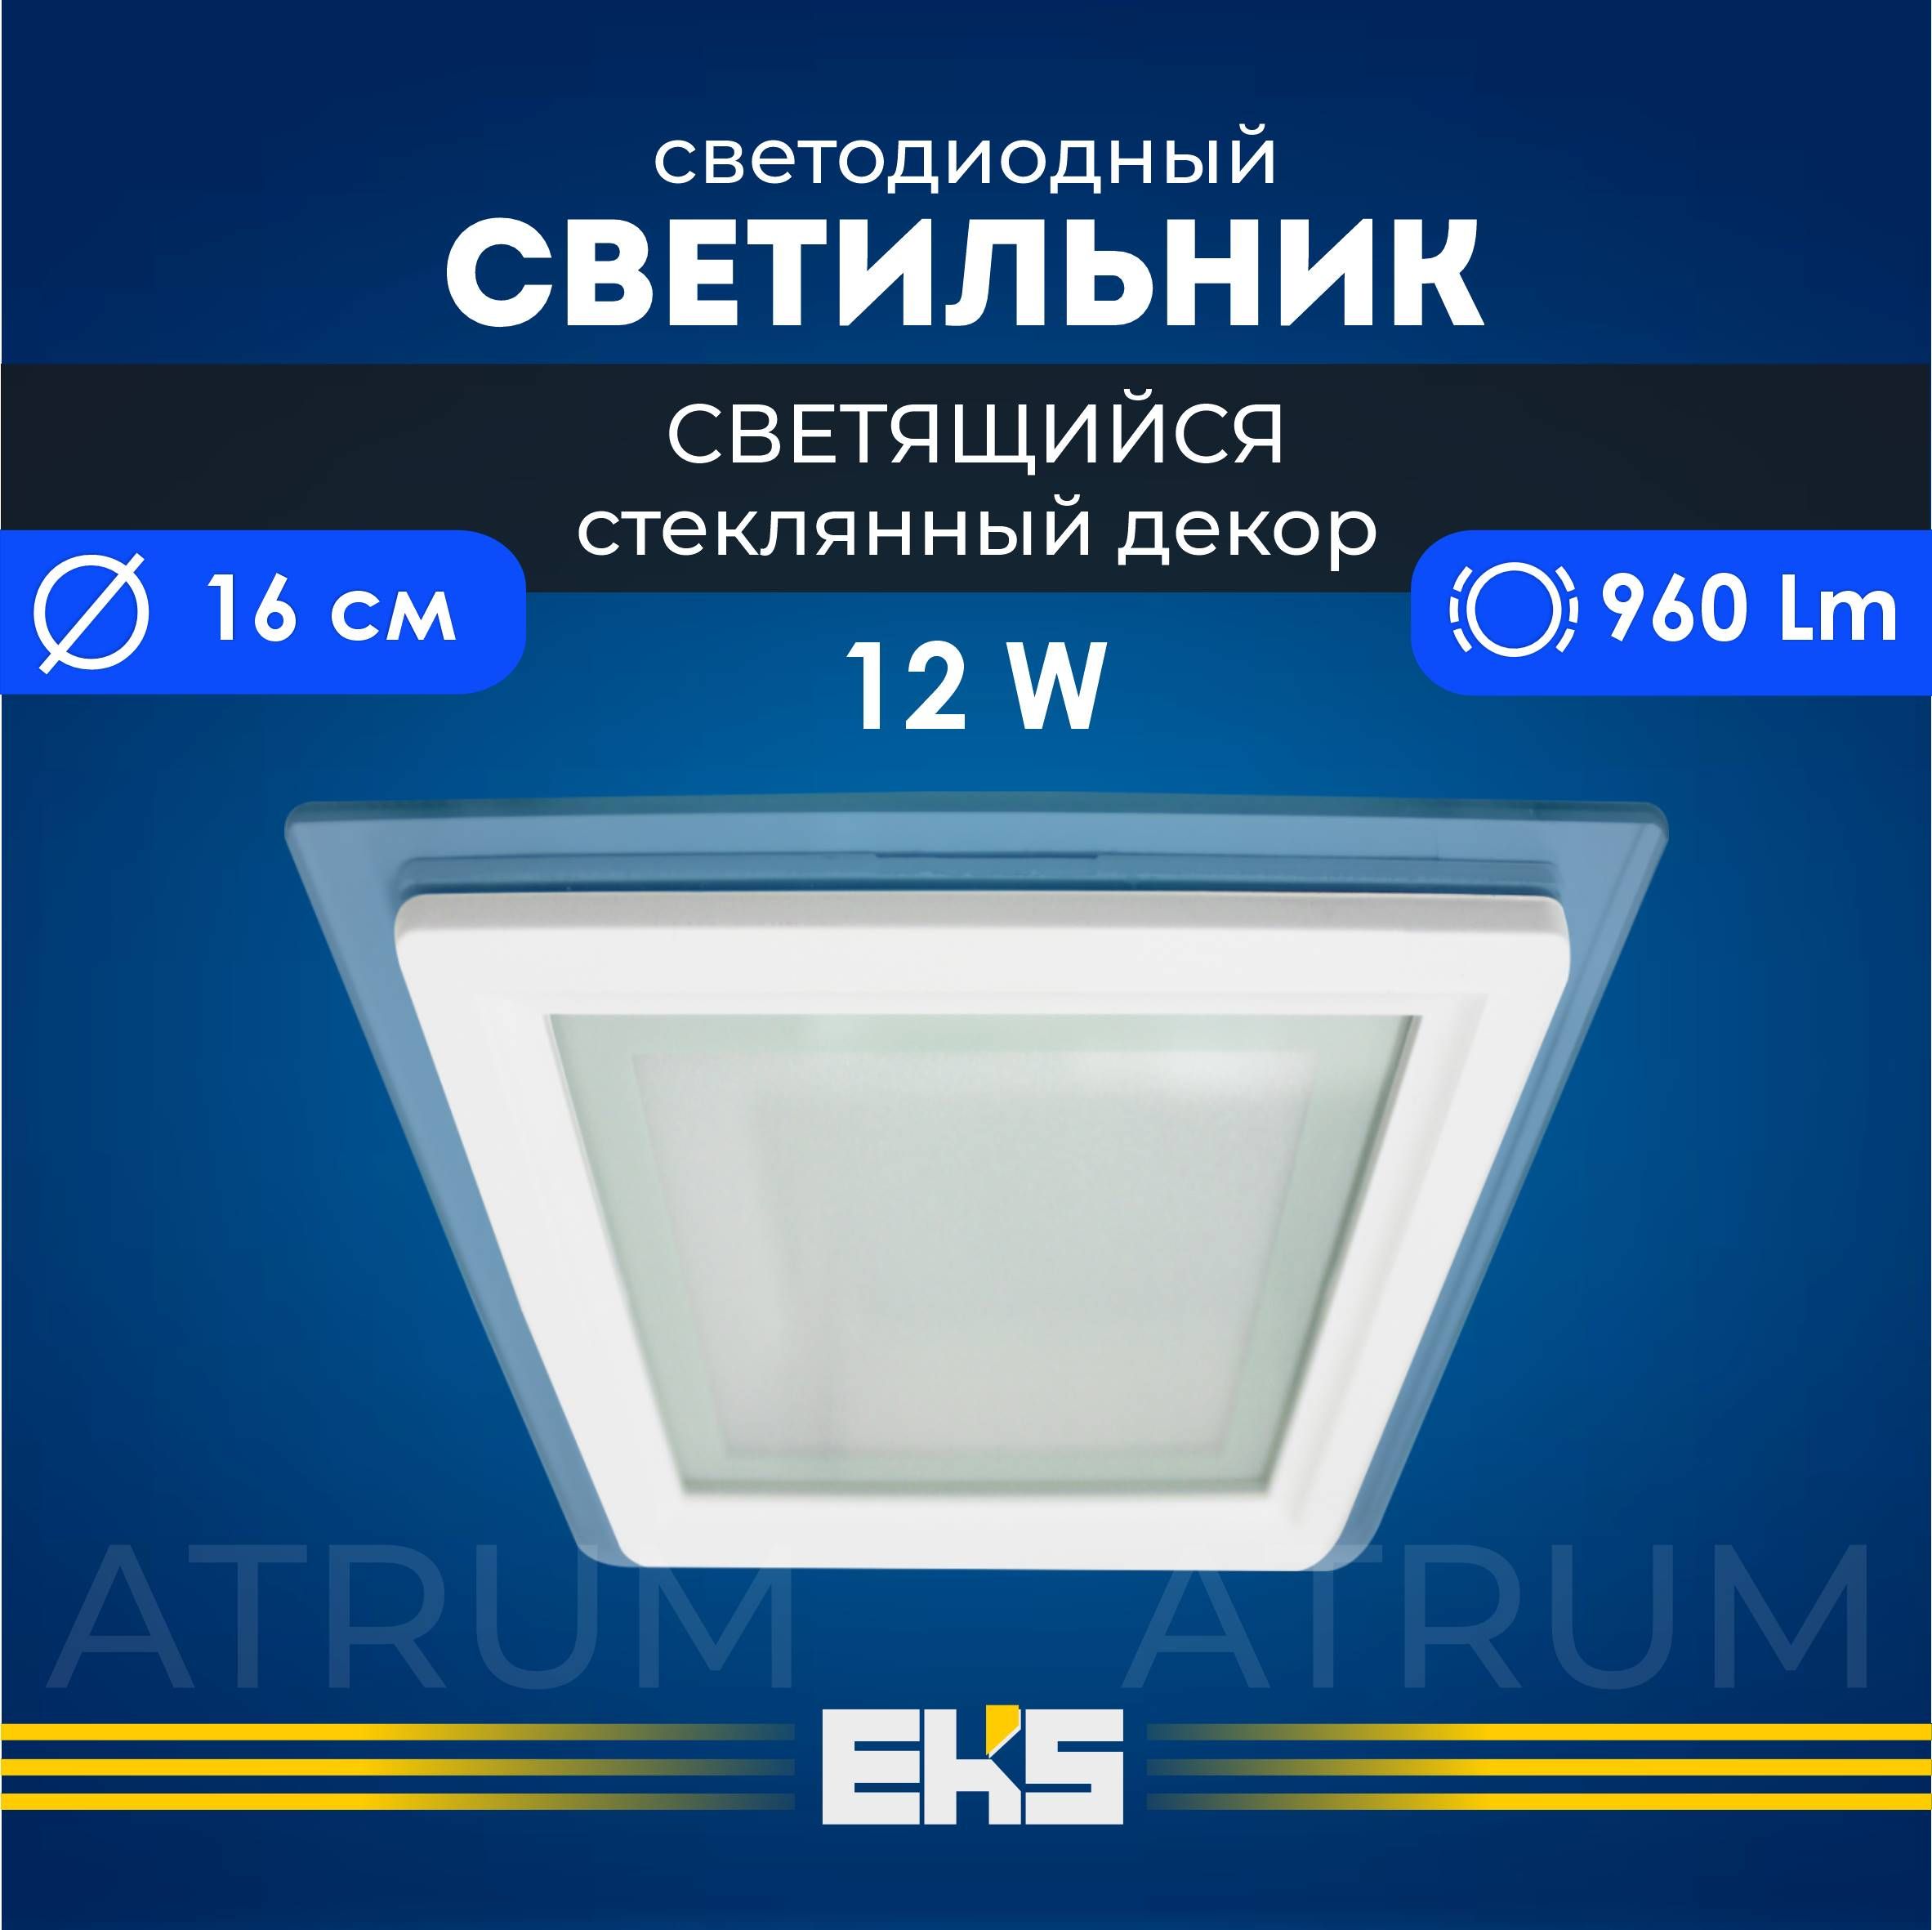 ВстраиваемыйсветильникEKSATRUM-Светодиоднаяпанель,LEDпанельквадрат(12Вт,960Лм),1шт.